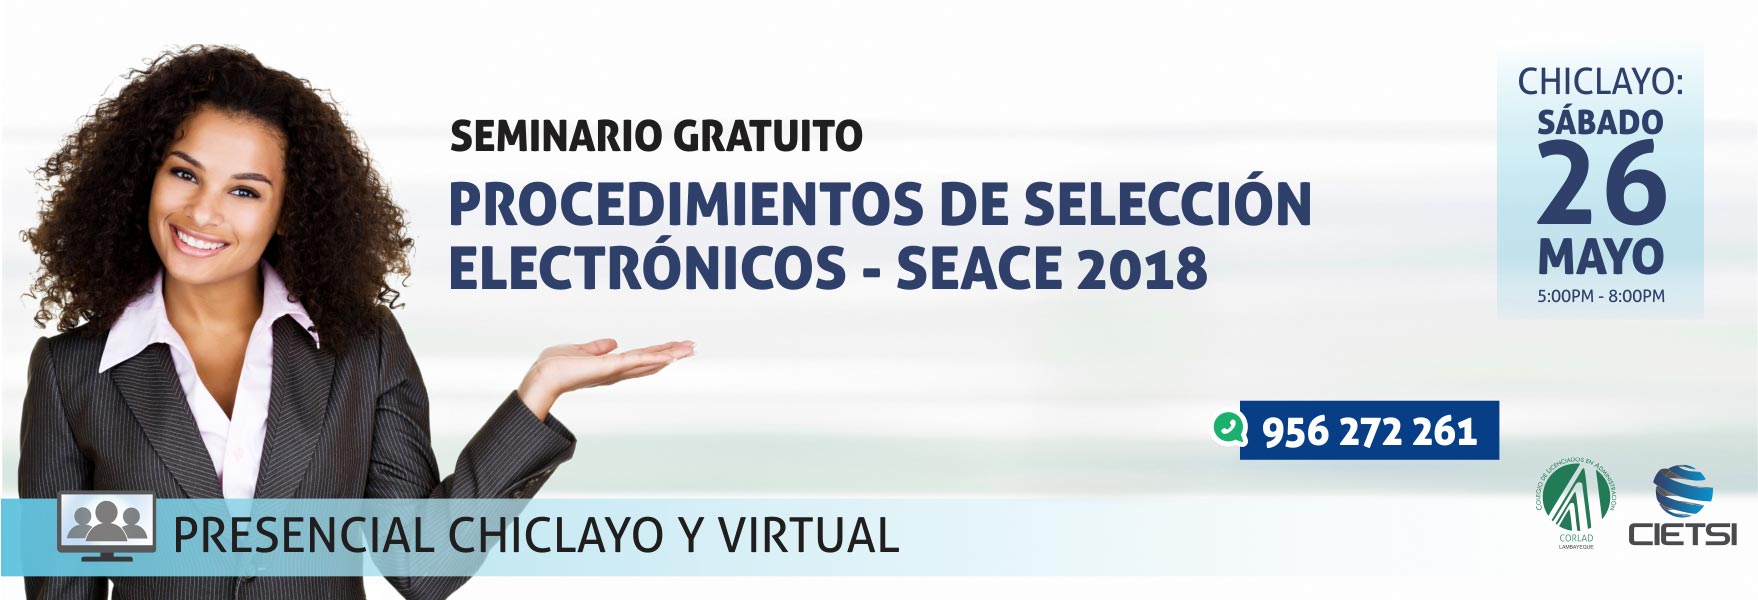 seminario gratuito procedimientos de selecciOn electrOnicos  seace 2018